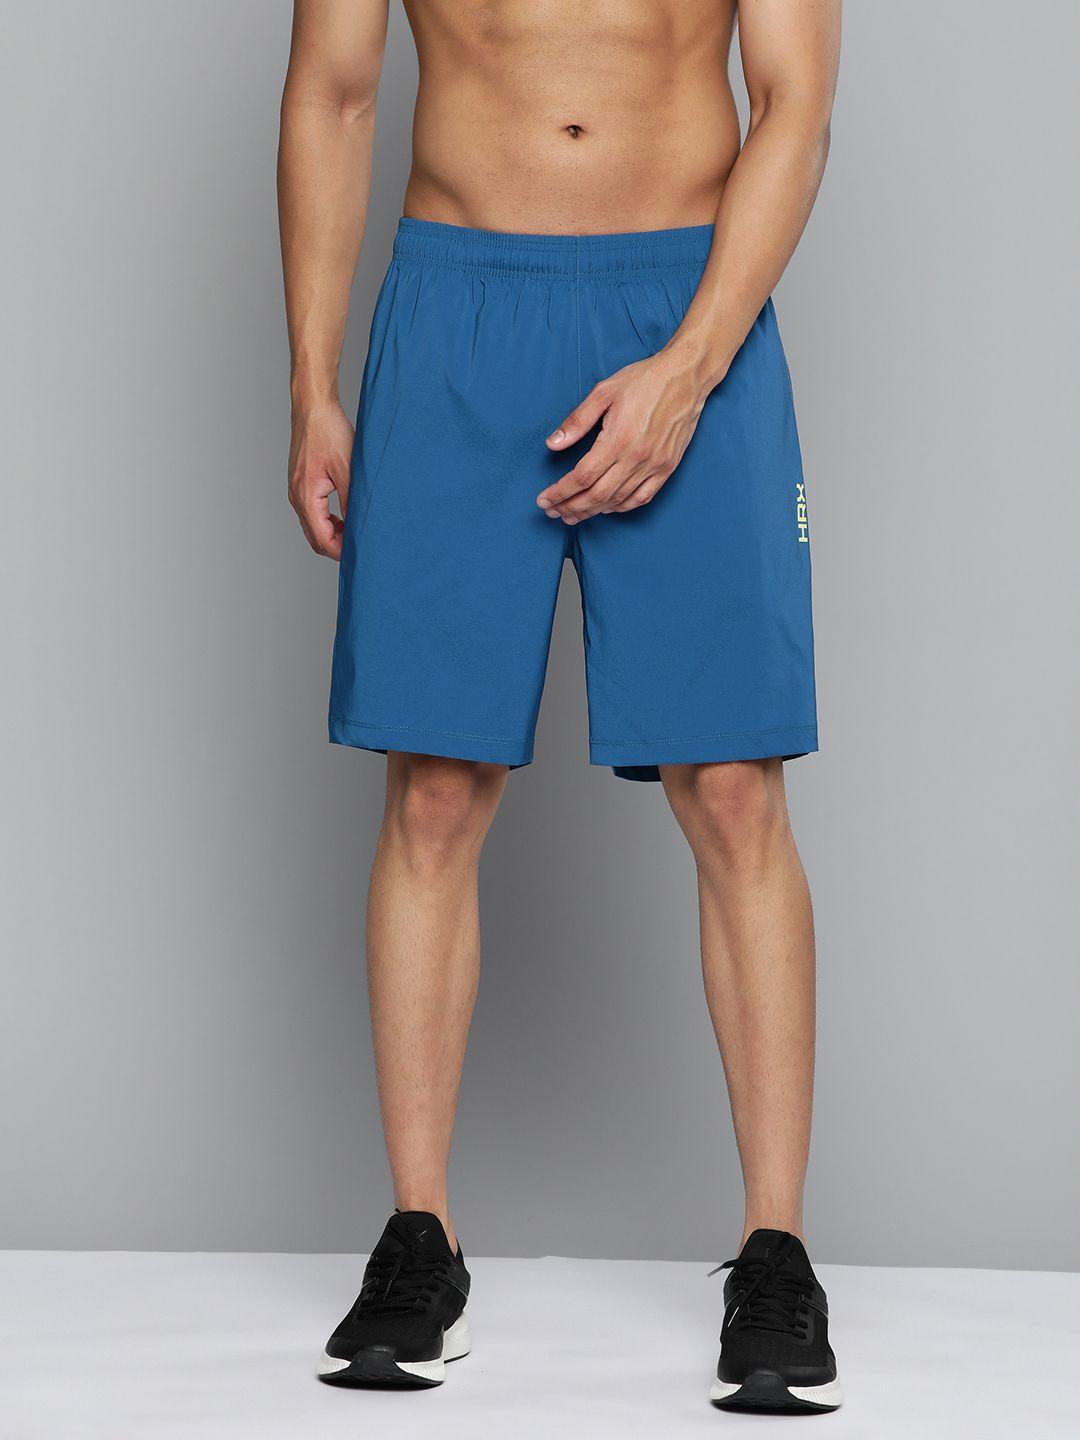 hrx by hrithik roshan training men rapid-dry brand carrier shorts